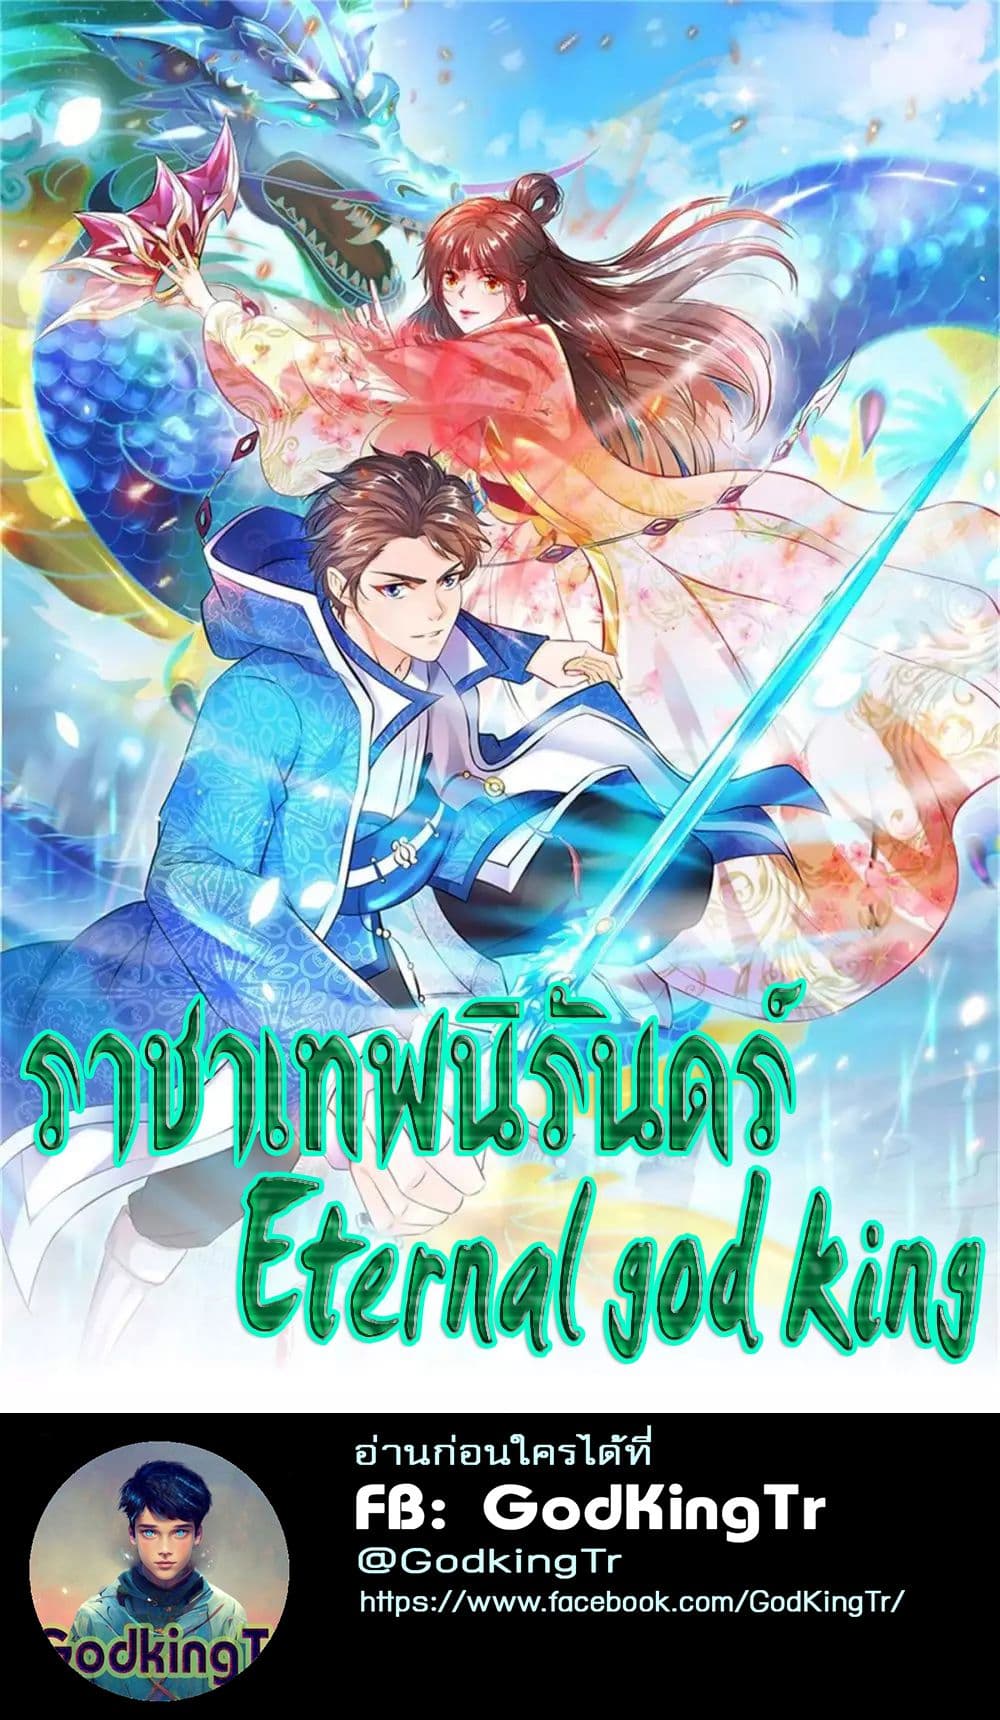 Eternal god King 26 01